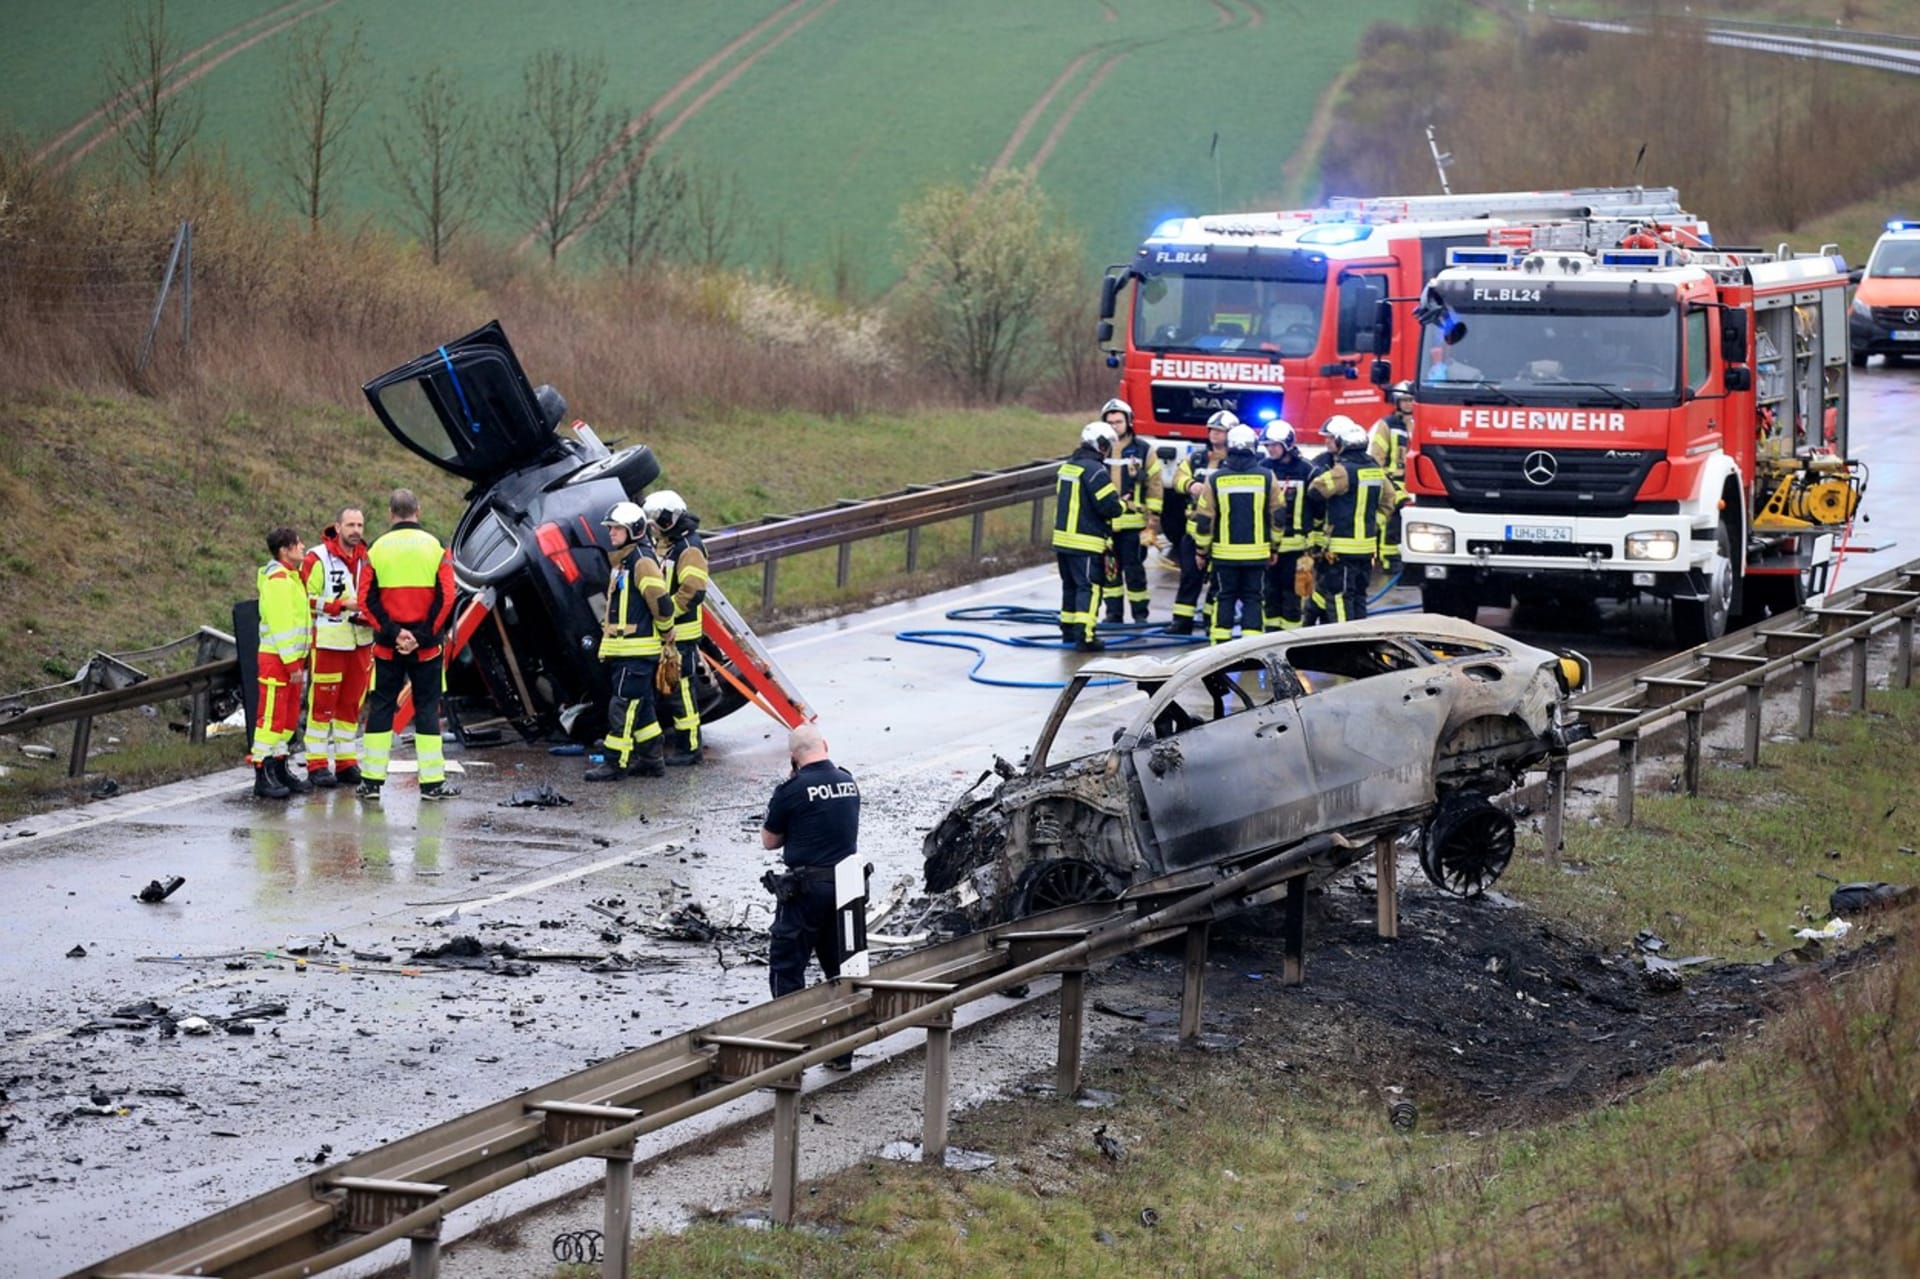 Těžká dopravní nehoda si v německém Durynsku vyžádala sedm životů